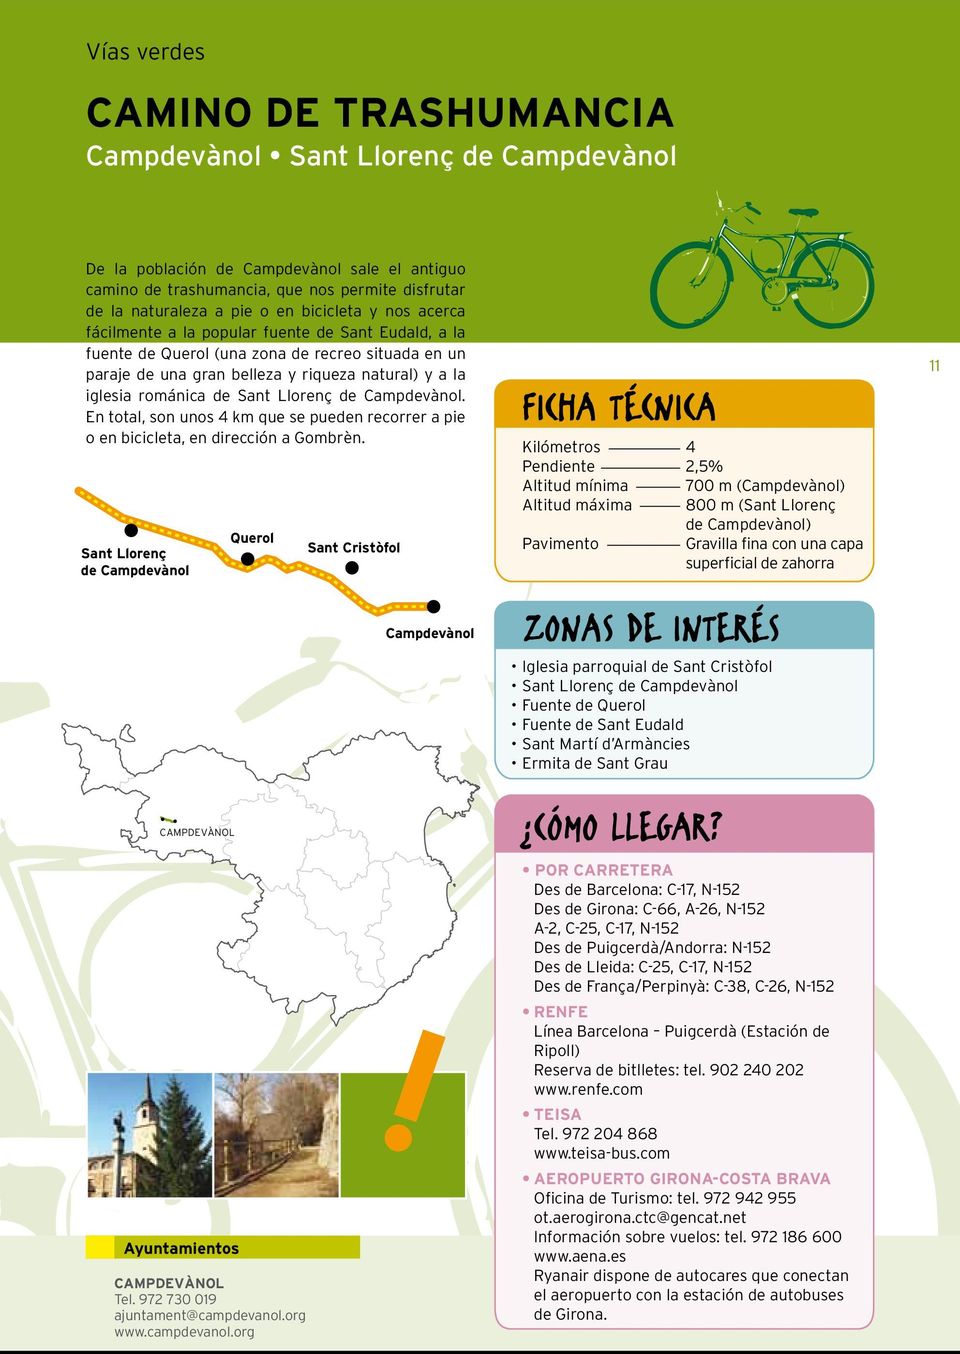 Sant Llorenç de Campdevànol. En total, son unos 4 km que se pueden recorrer a pie o en bicicleta, en dirección a Gombrèn. Sant Llorenç de Campdevànol CAMPDEVÀNOL Ayuntamientos Querol CAMPDEVÀNOL Tel.